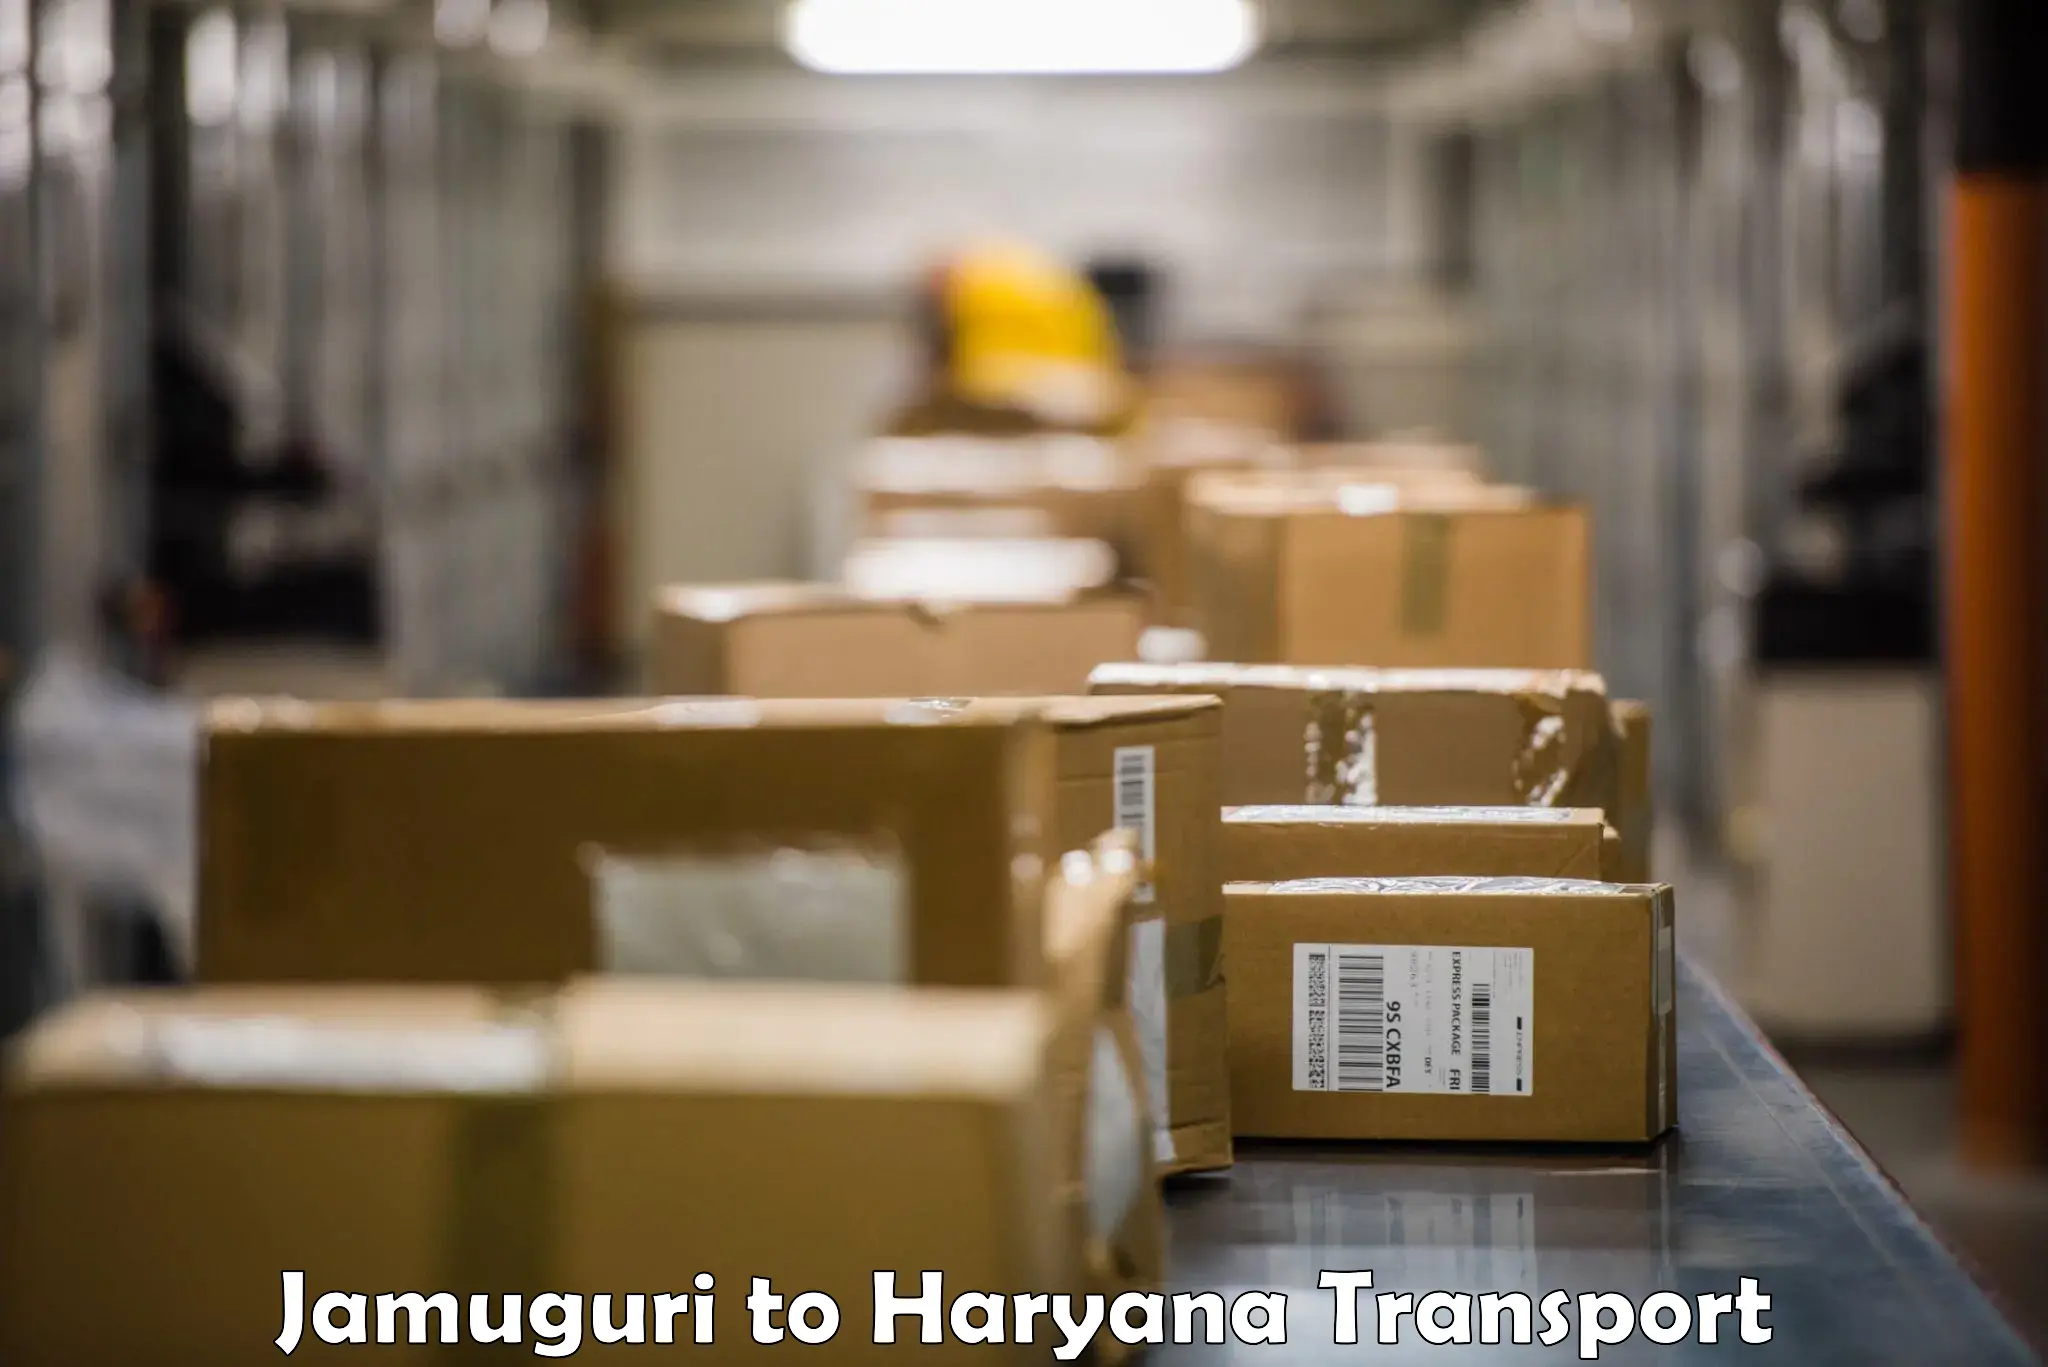 Truck transport companies in India in Jamuguri to Ambala